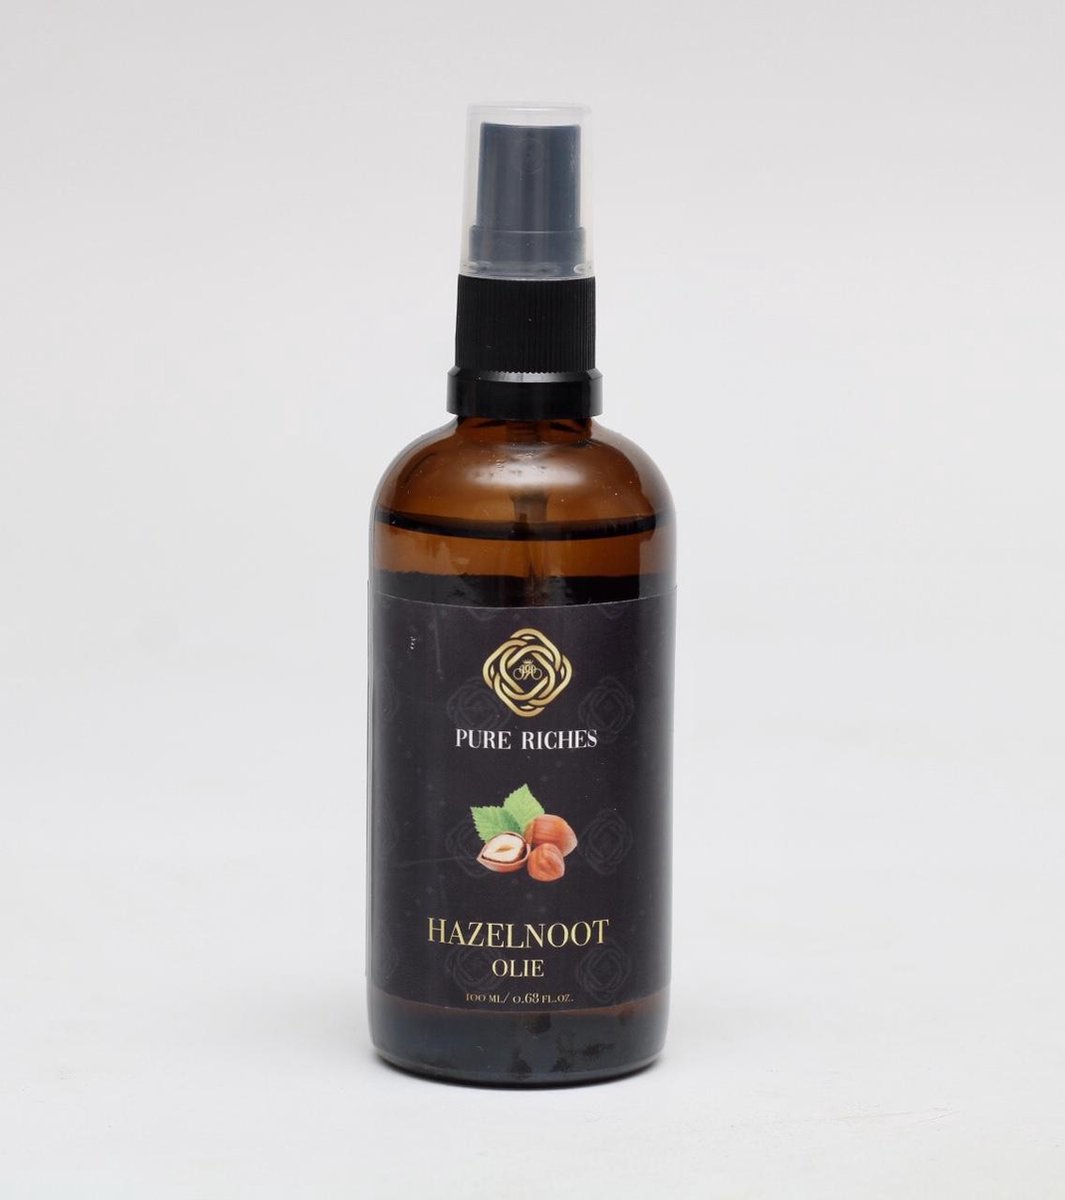 Pure Riches Hazelnoot olie 100ml - 100% puur biologisch - Voedt het haar & huid.